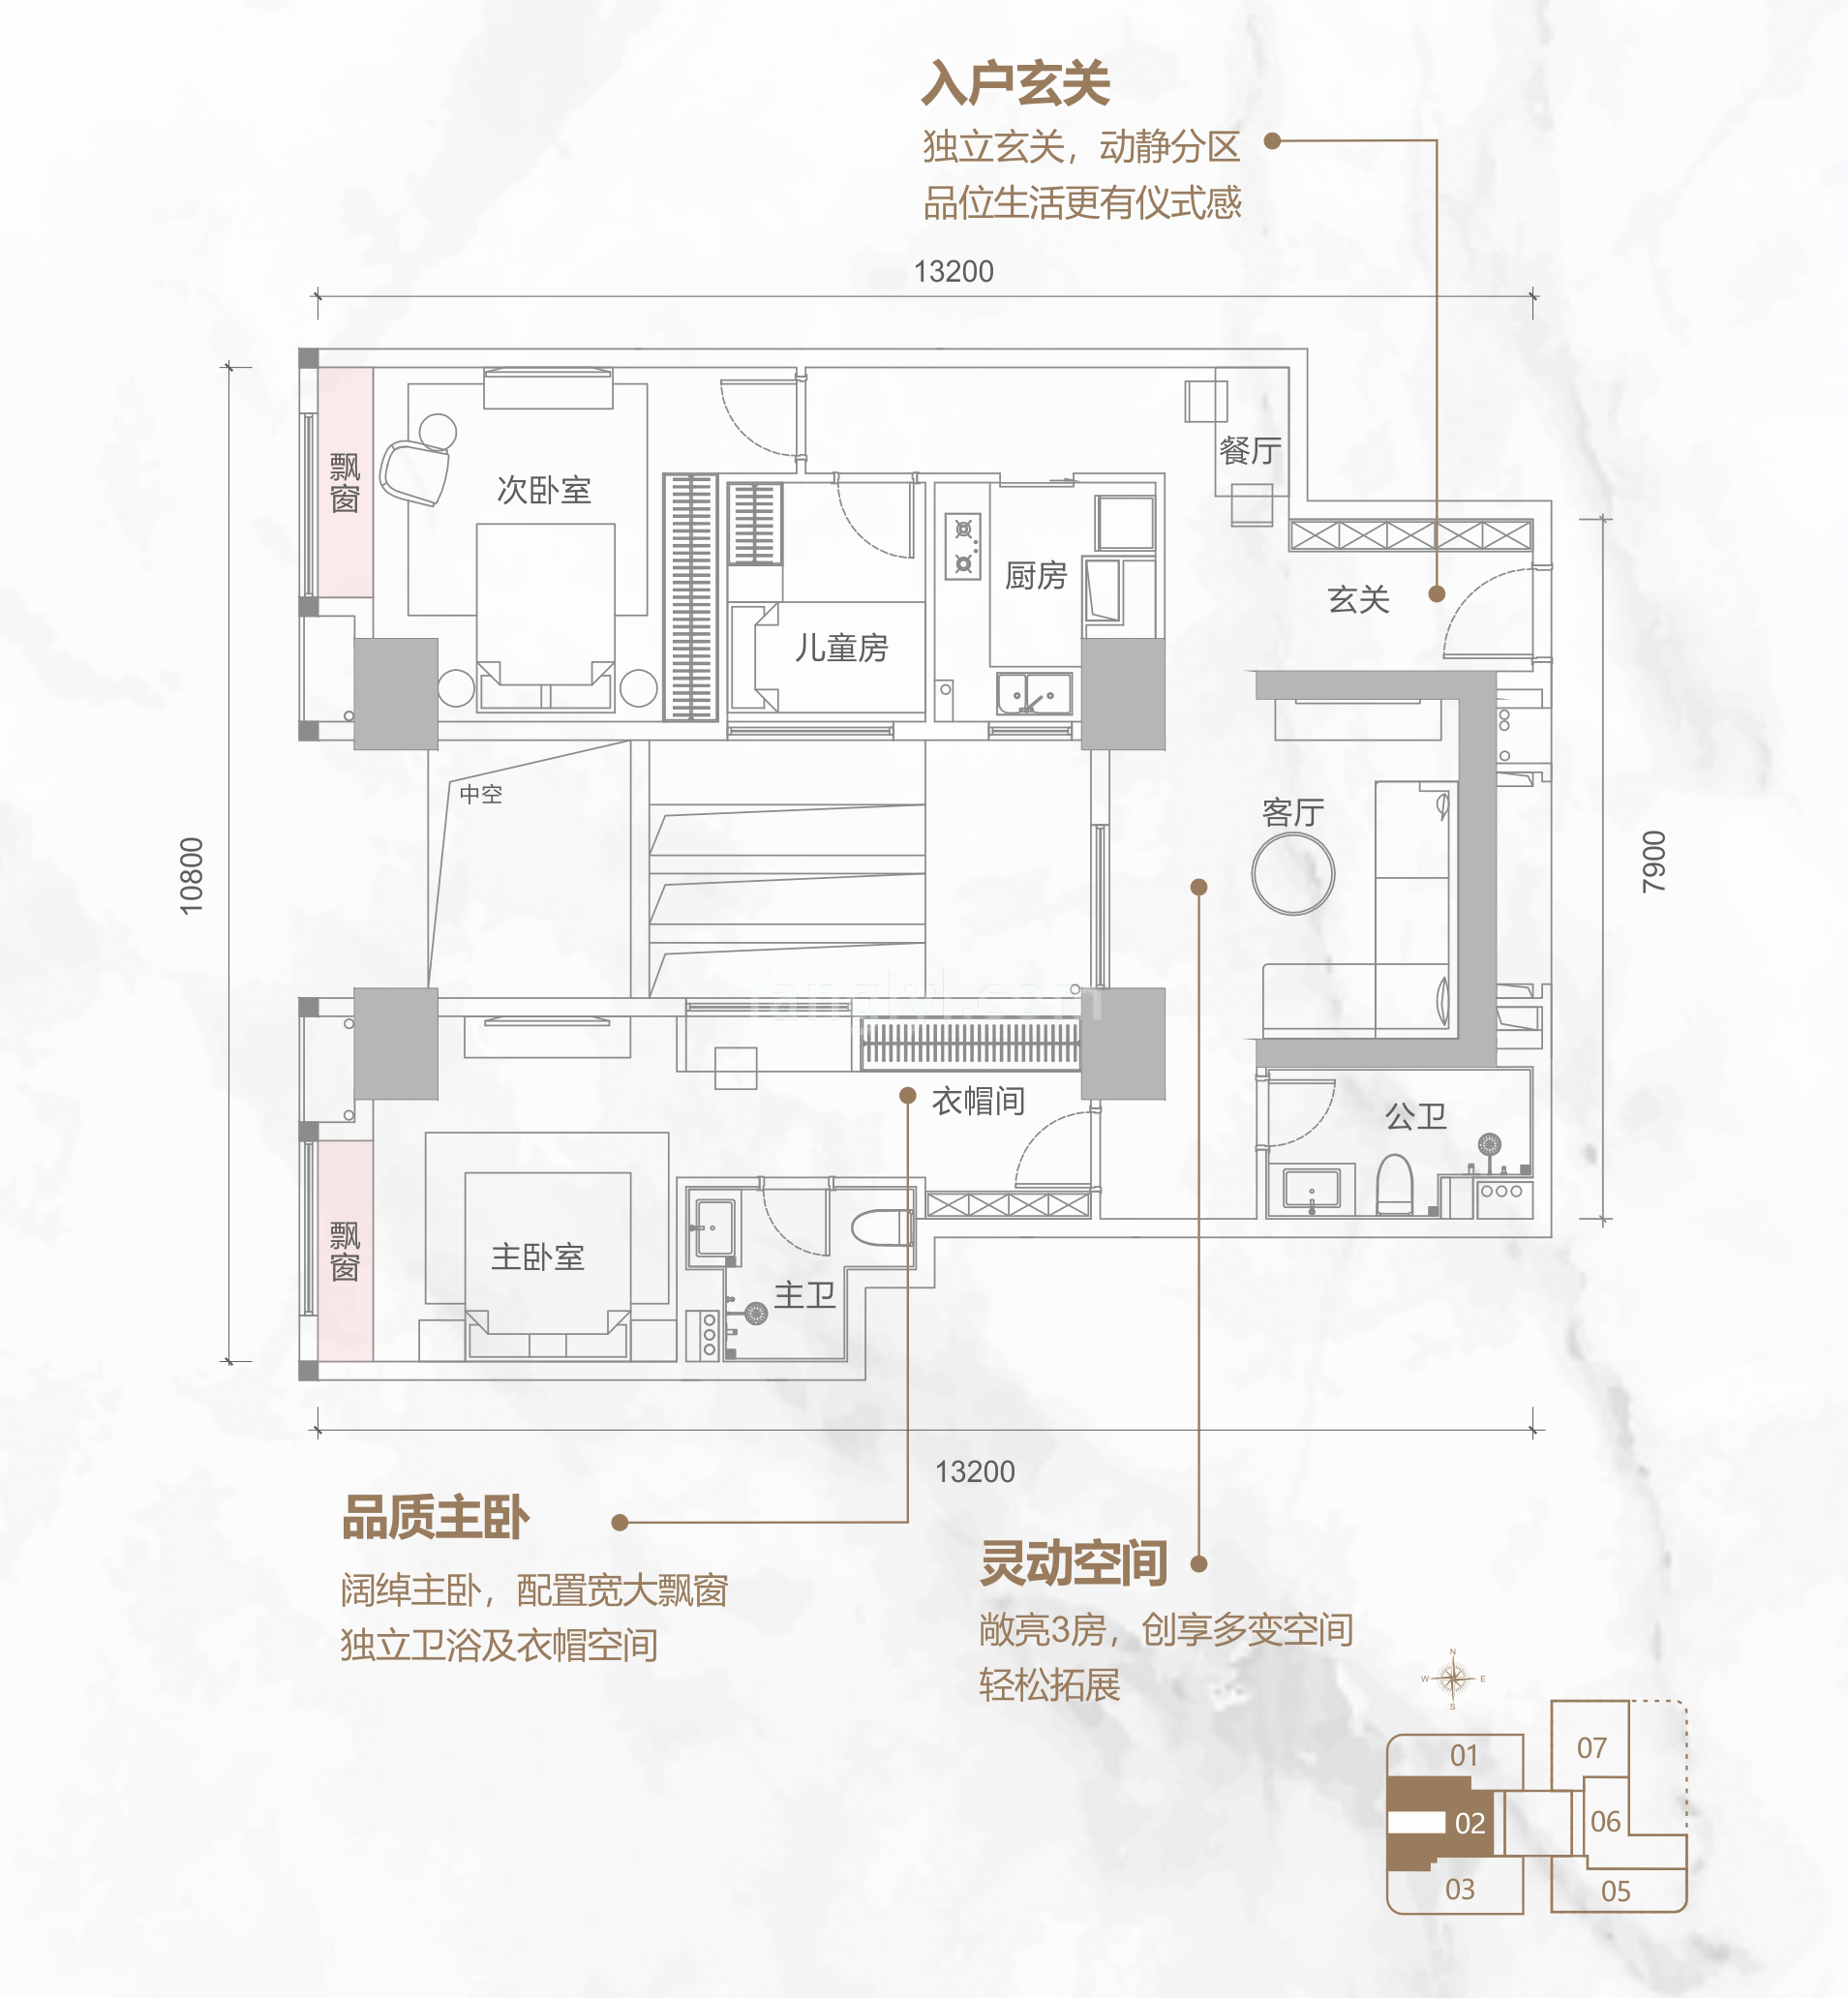 同康江语海 高层 A-02户型 3房2厅2卫 建筑面积129㎡ 